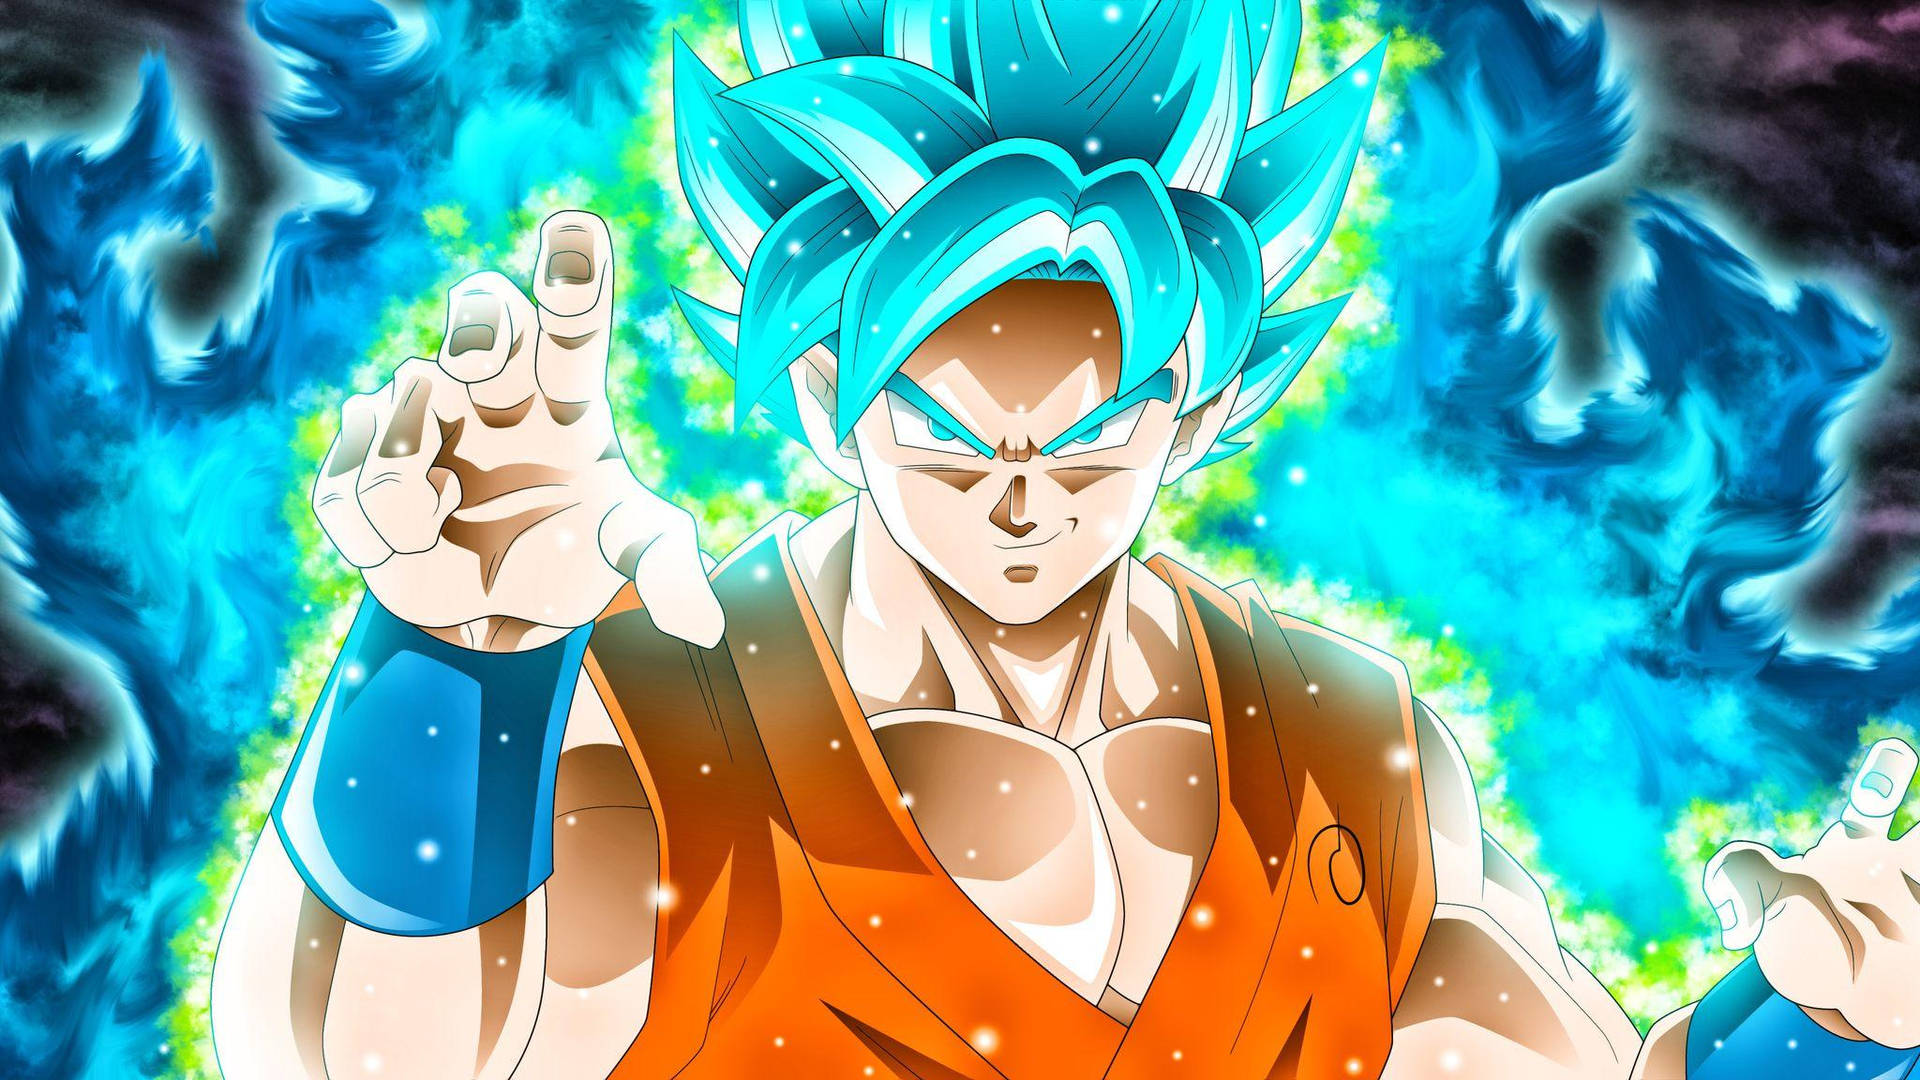 Goku Dragon Ball Super Ultra HD Desktop Background Wallpaper for